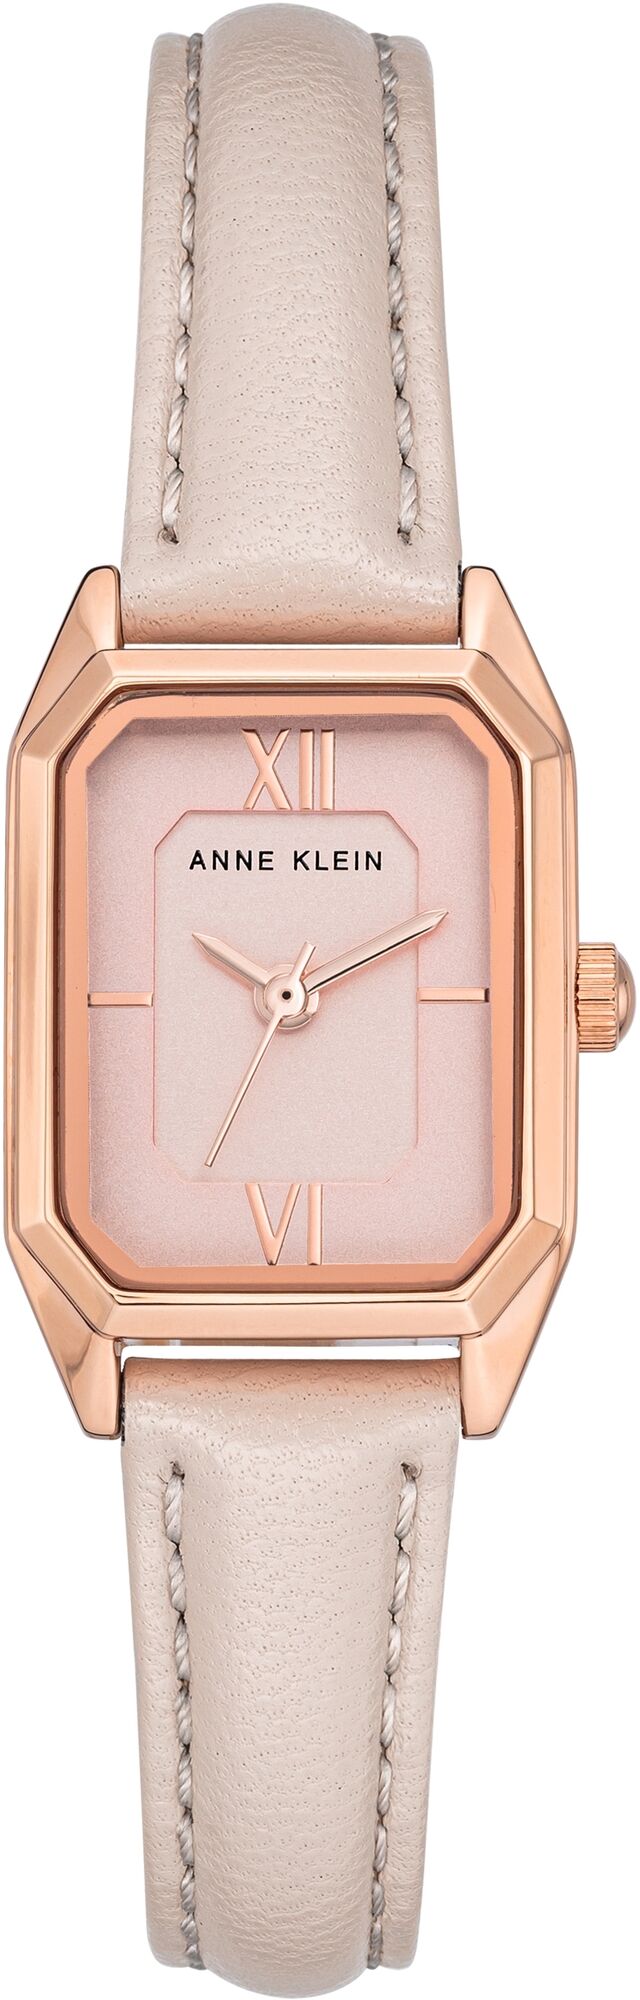 Женские наручные часы Anne Klein Leather 3968RGBH